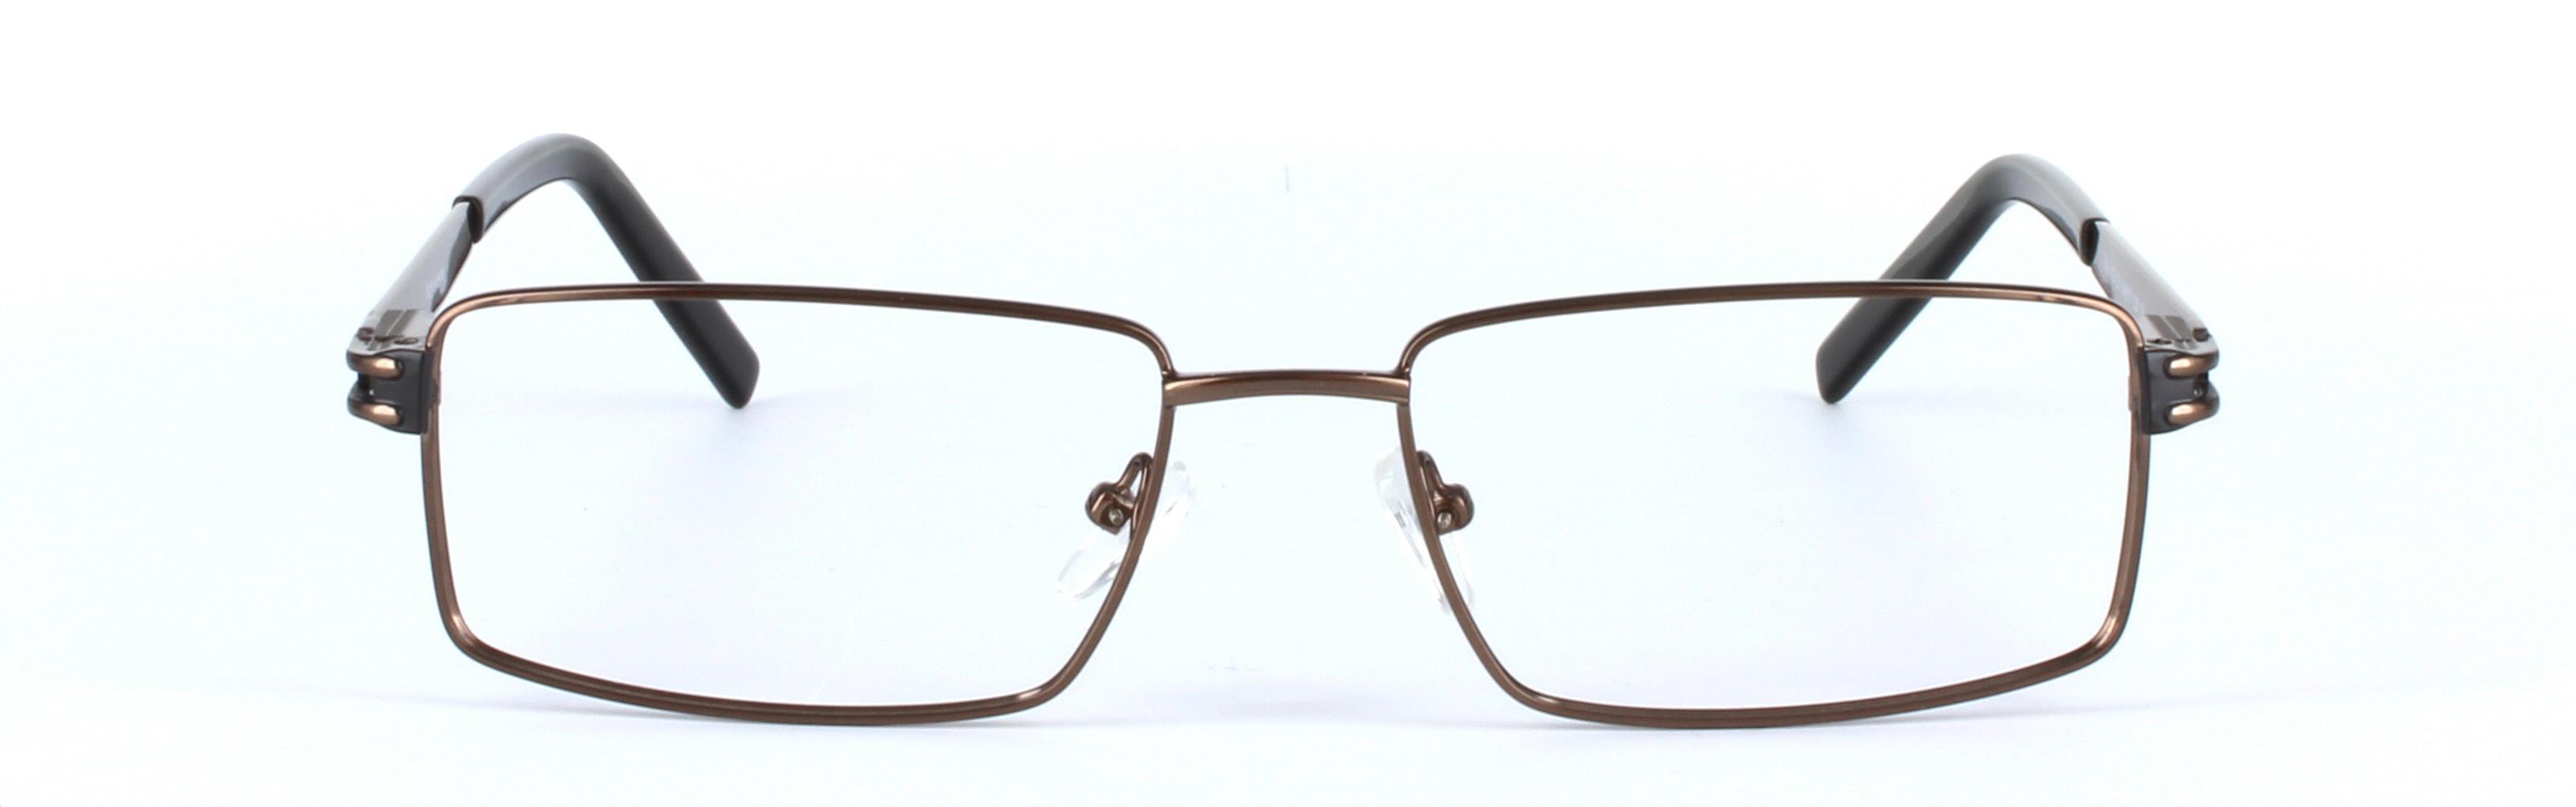 Brown Full Rim Rectangular Metal Glasses Varna - Image View 5